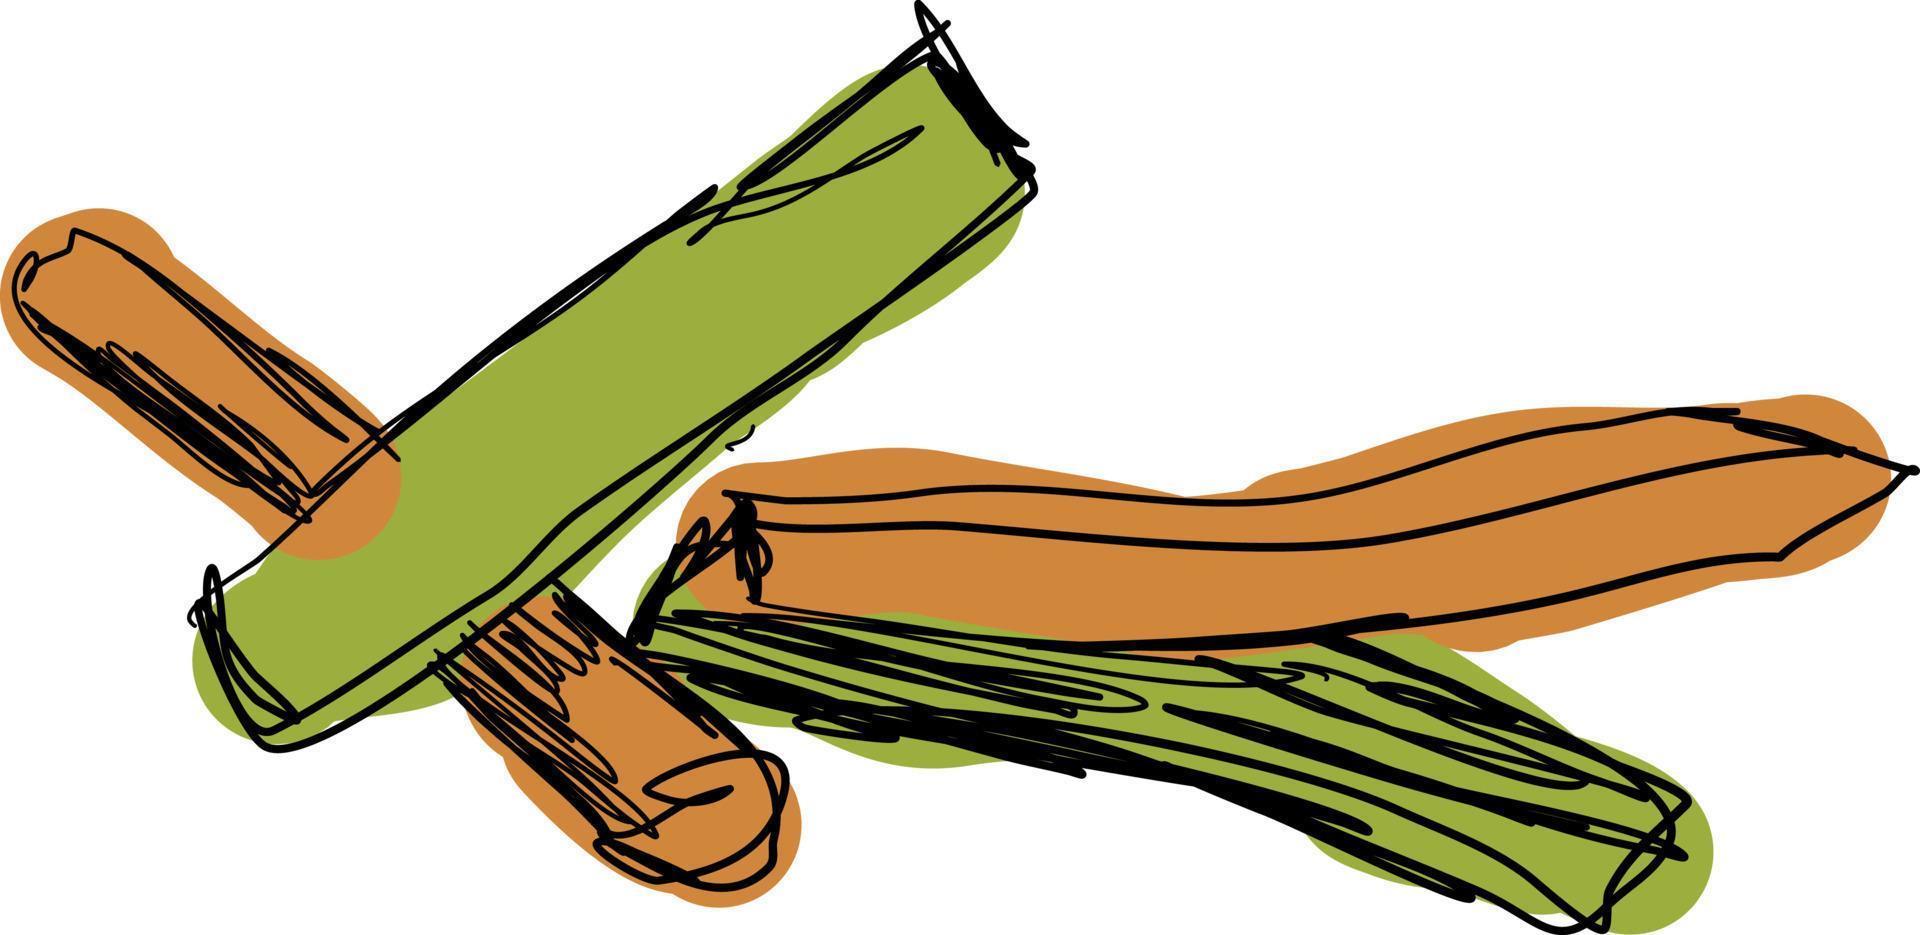 Veggie sticks, illustration, vector on white background.